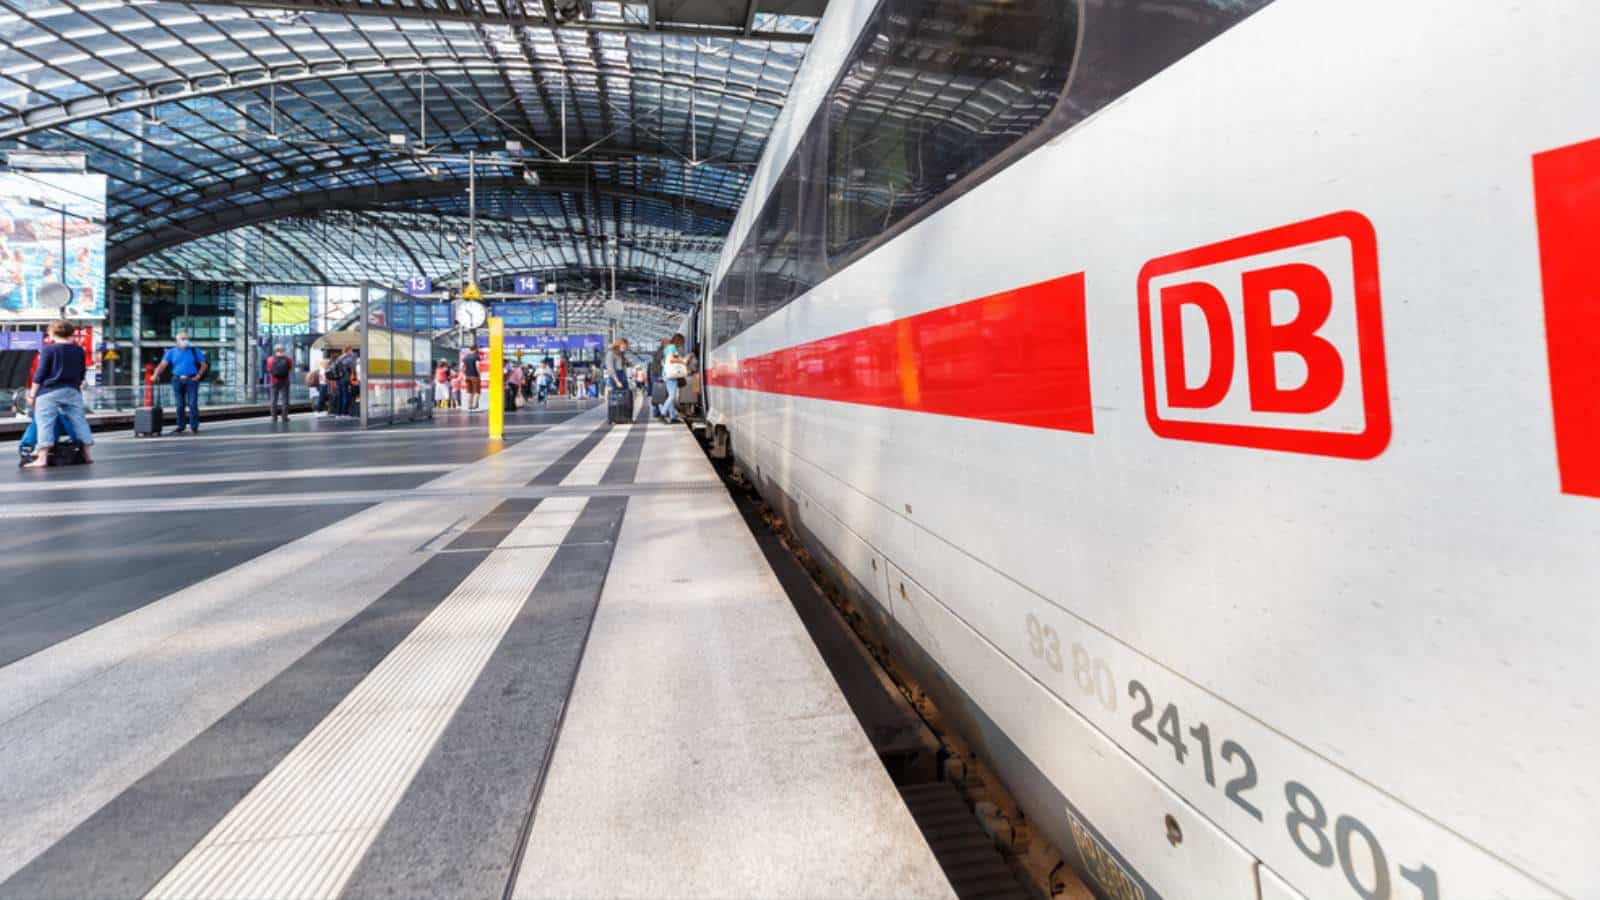 Bahn erhält weniger Geld von Bund